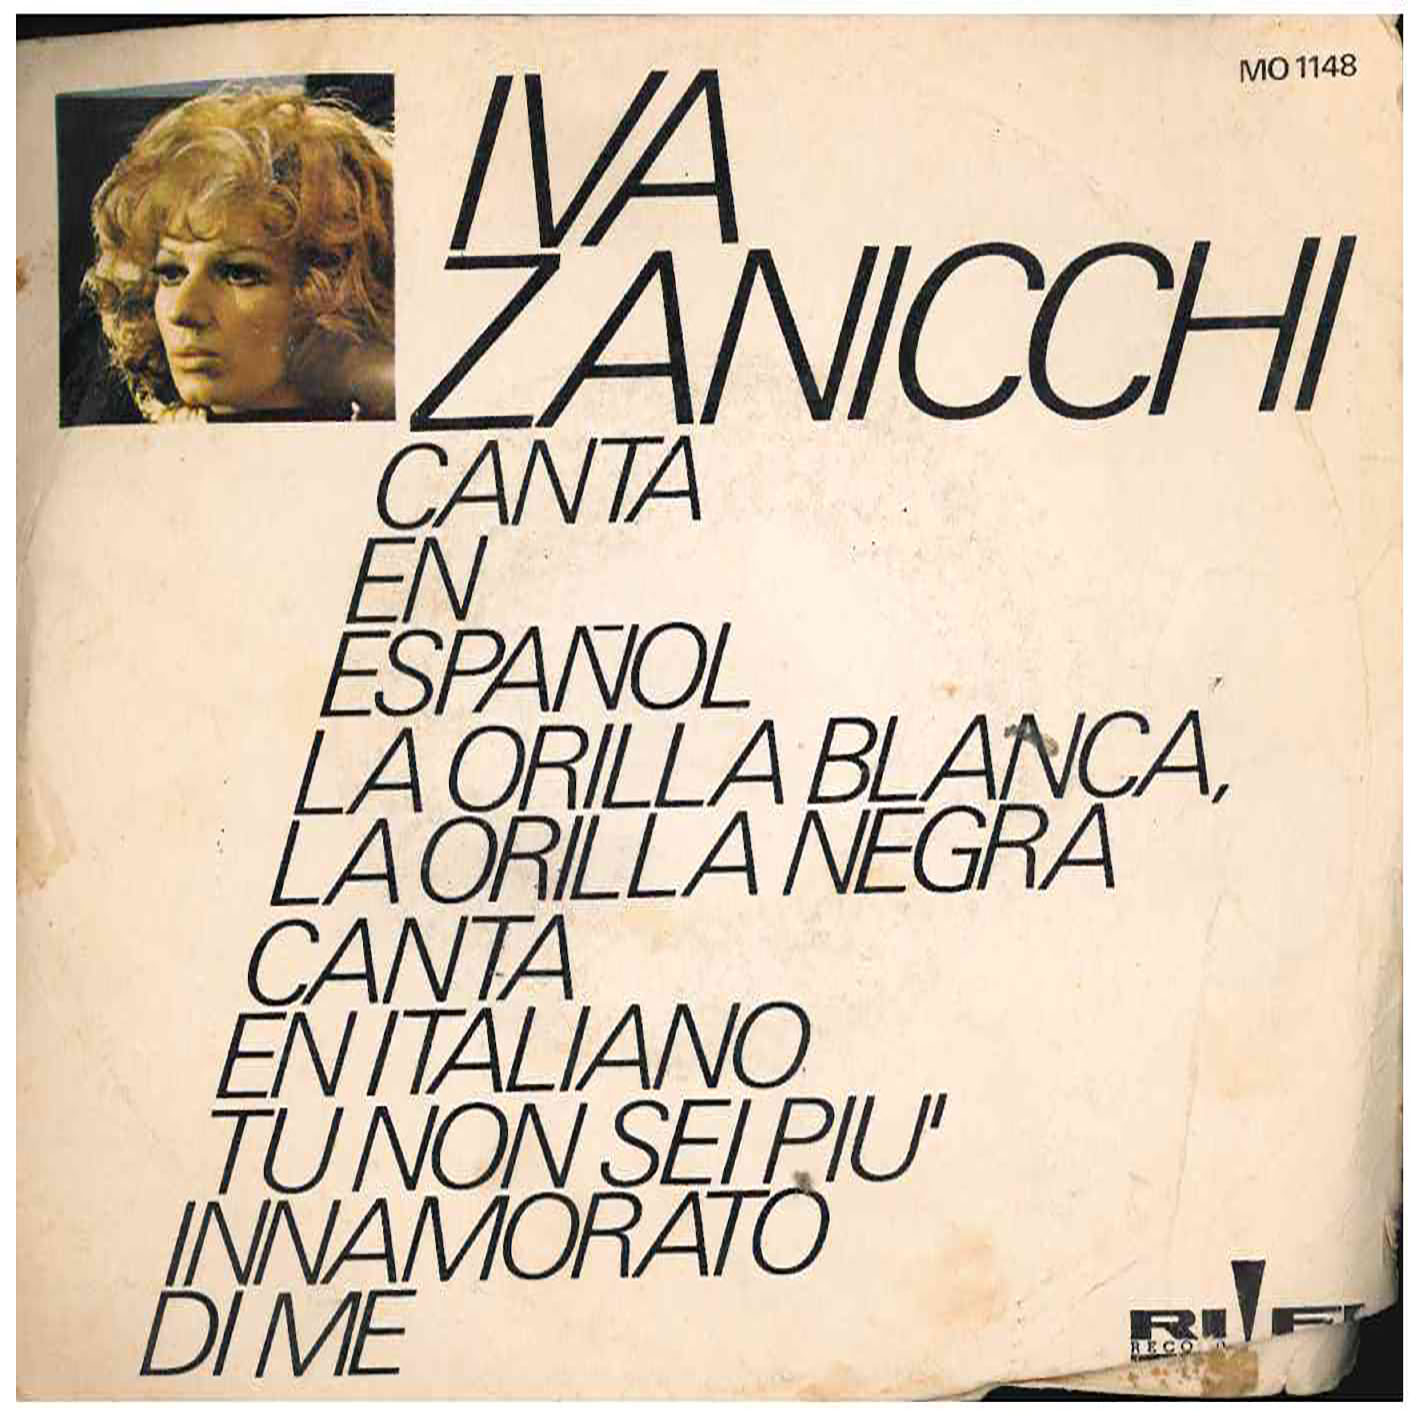 Iva Zanicchi – La Orilla Blanca, La Orilla Negra / Tu Non Sei Piu Innamorato Di Me